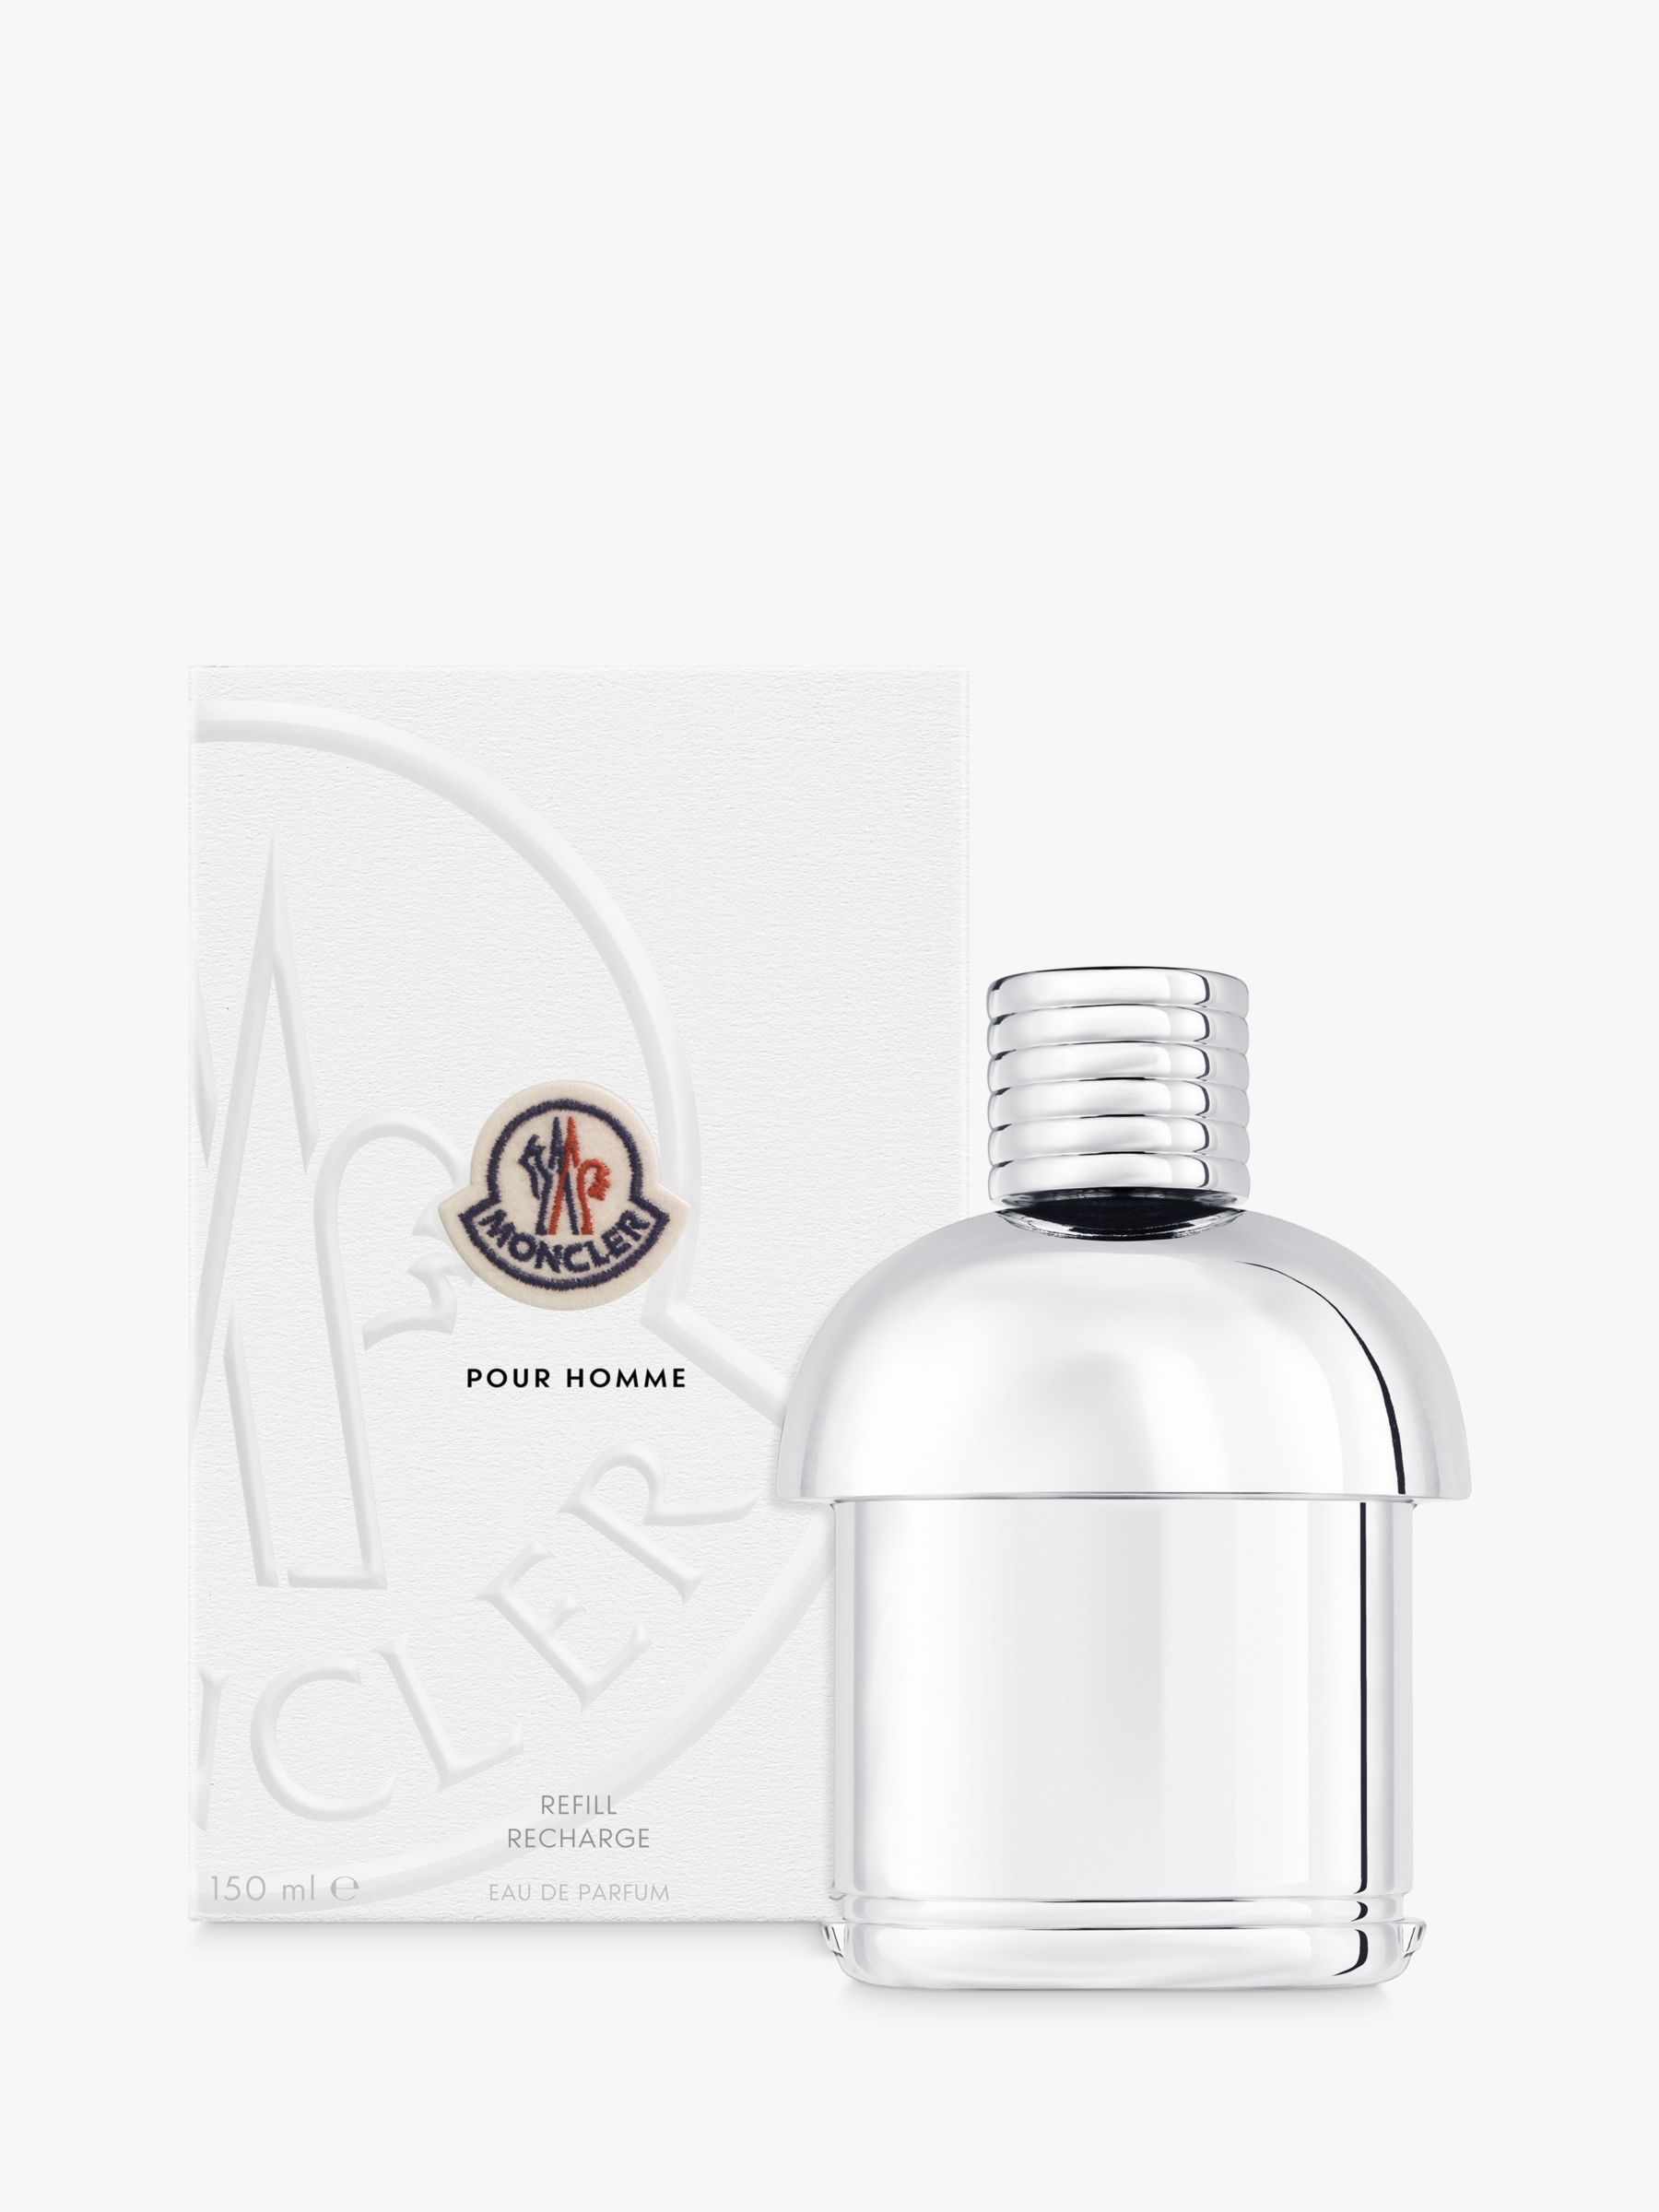 Moncler Pour Homme Eau de Parfum Refill, 150ml 2